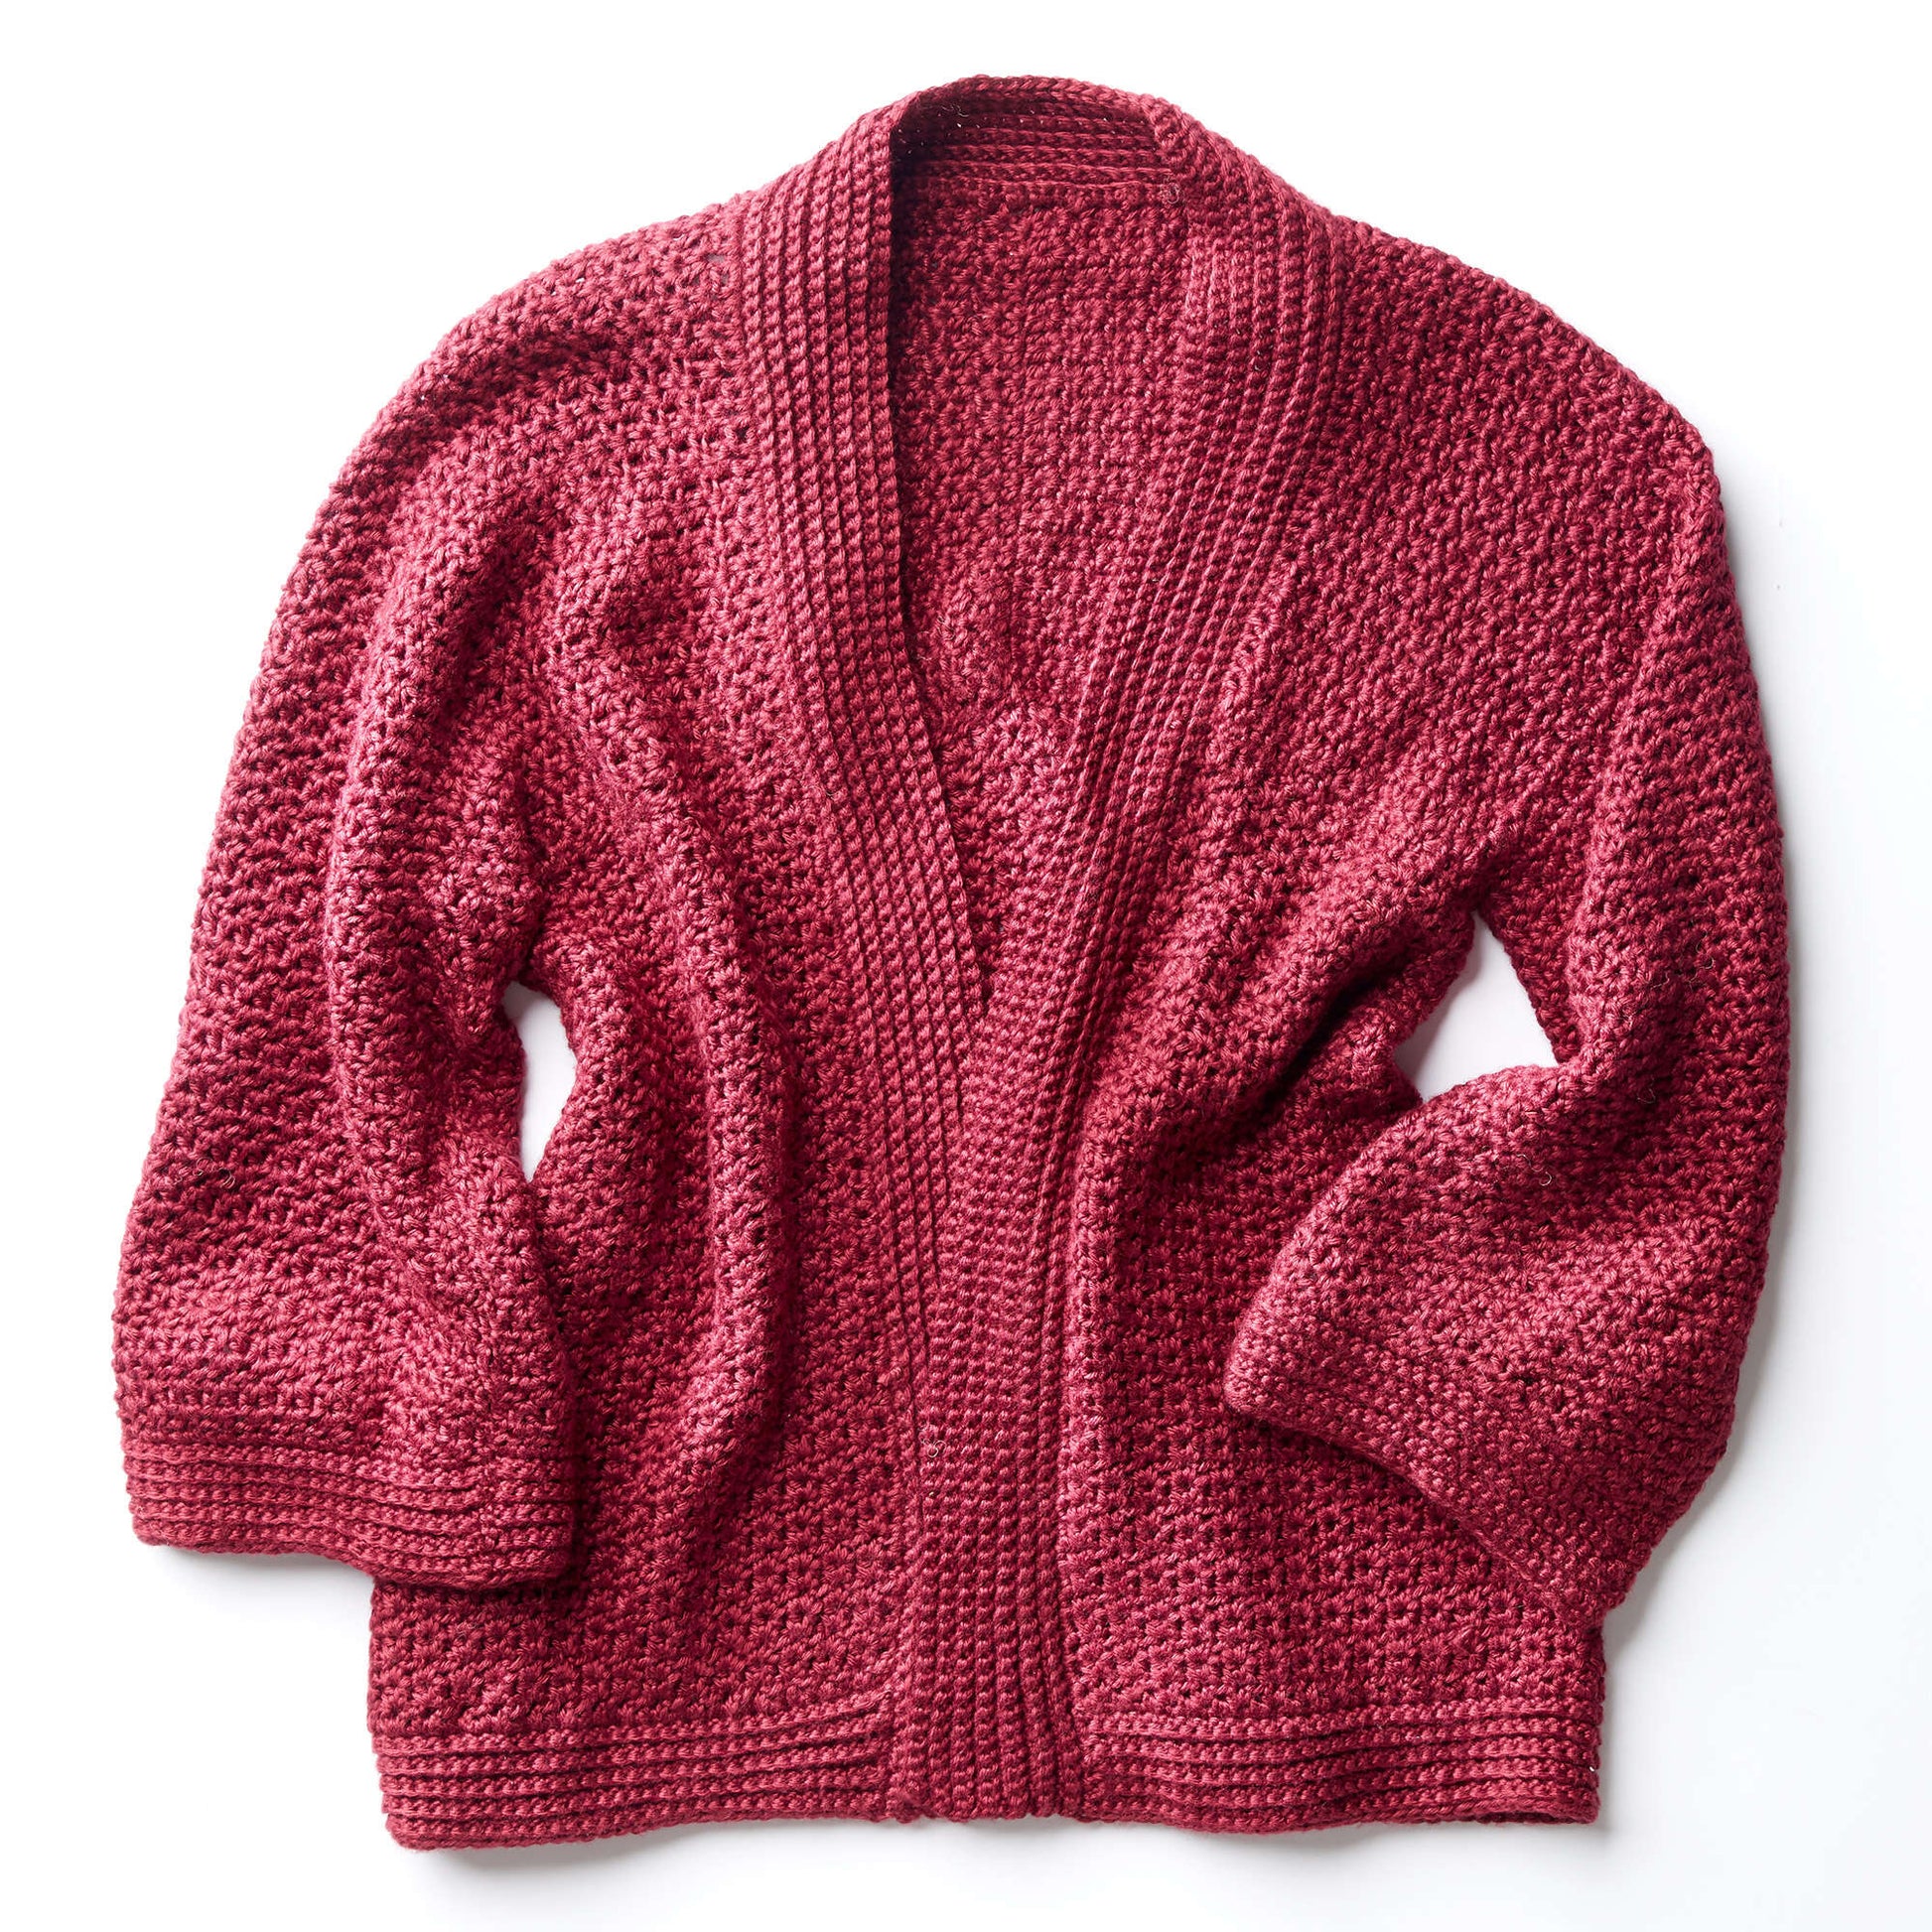 Free Patons Soft Drape Kimono Crochet Jacket Pattern